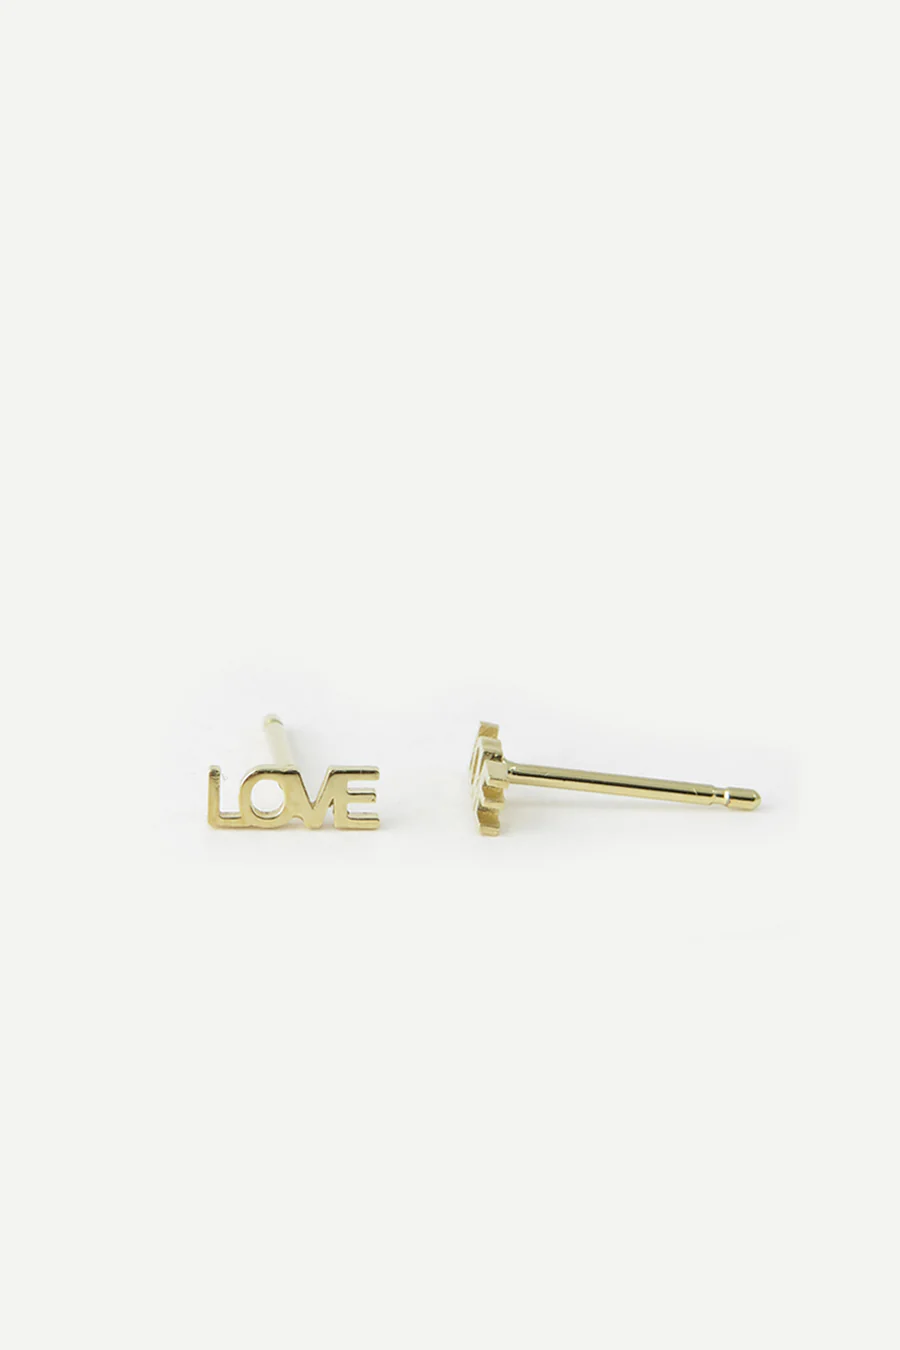 Studio MHL Gold Earrings "Love"